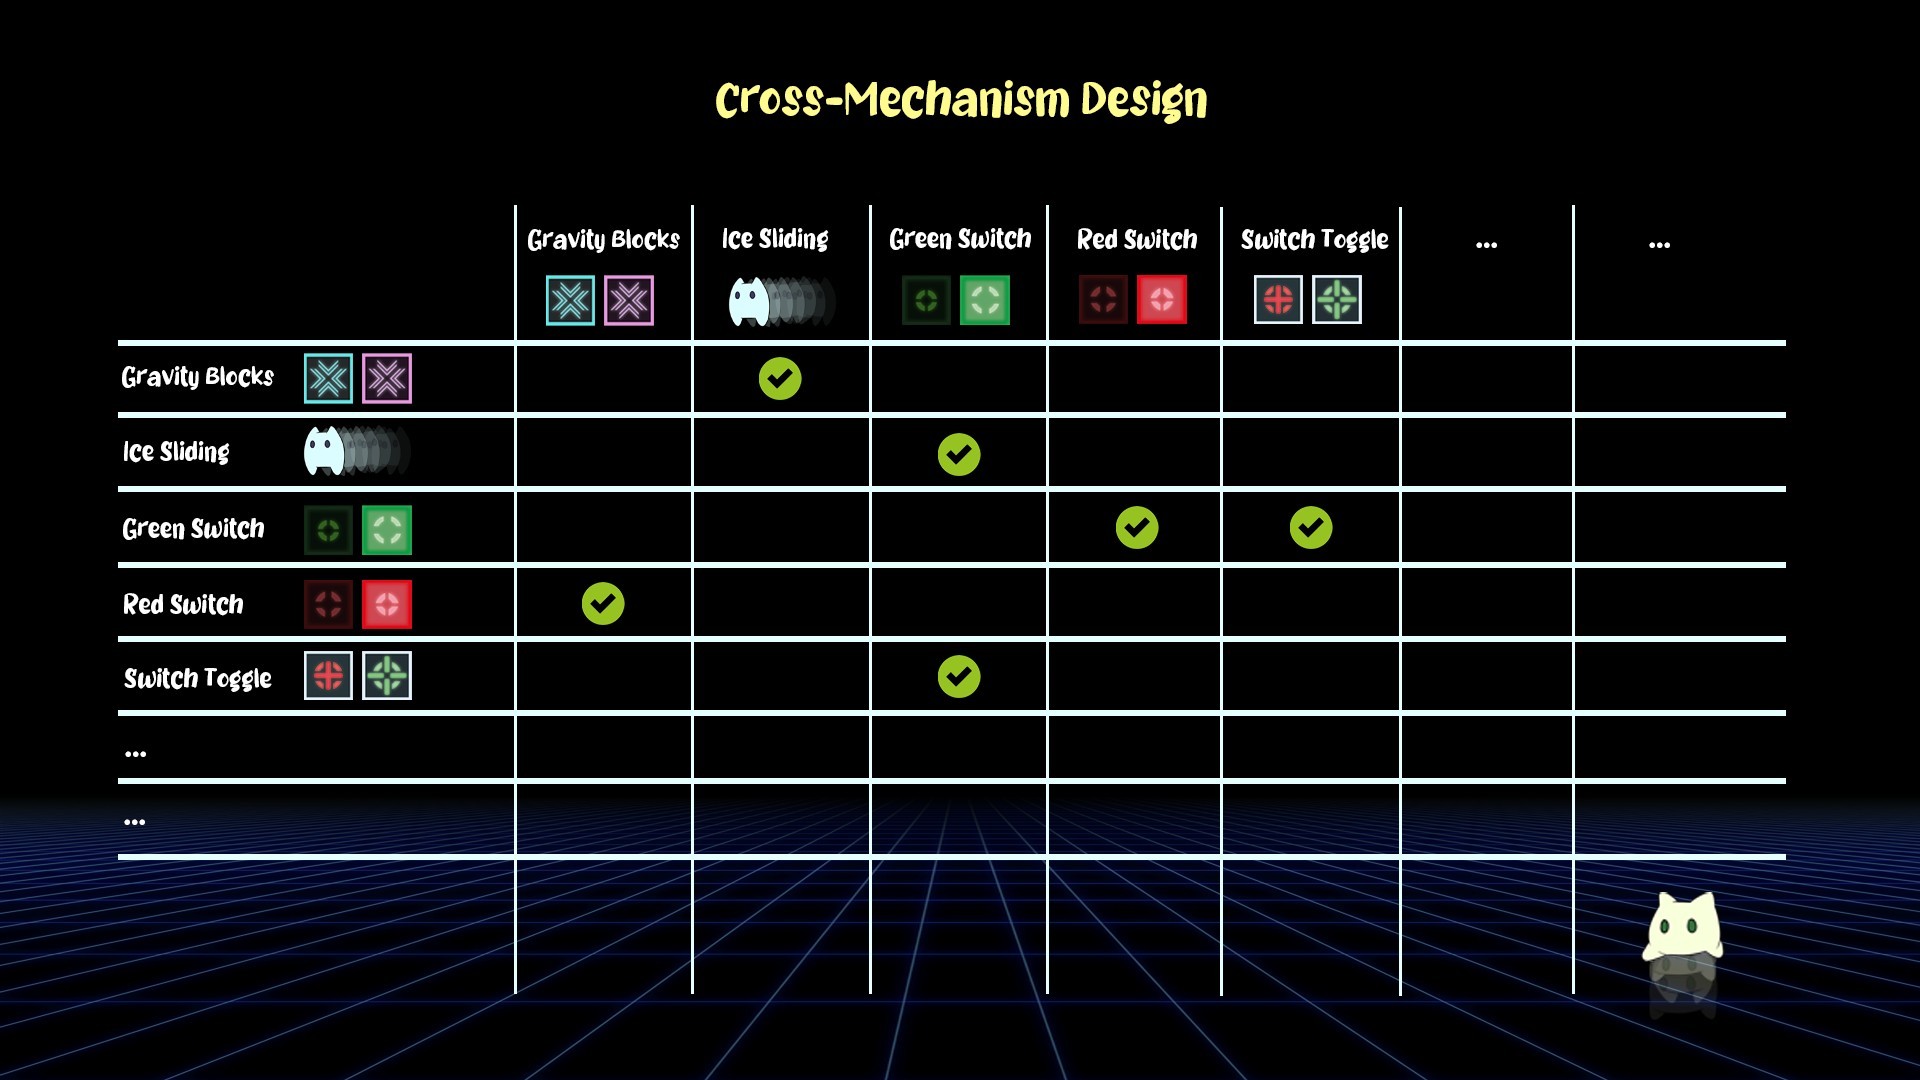 Cross-Mechanism Design